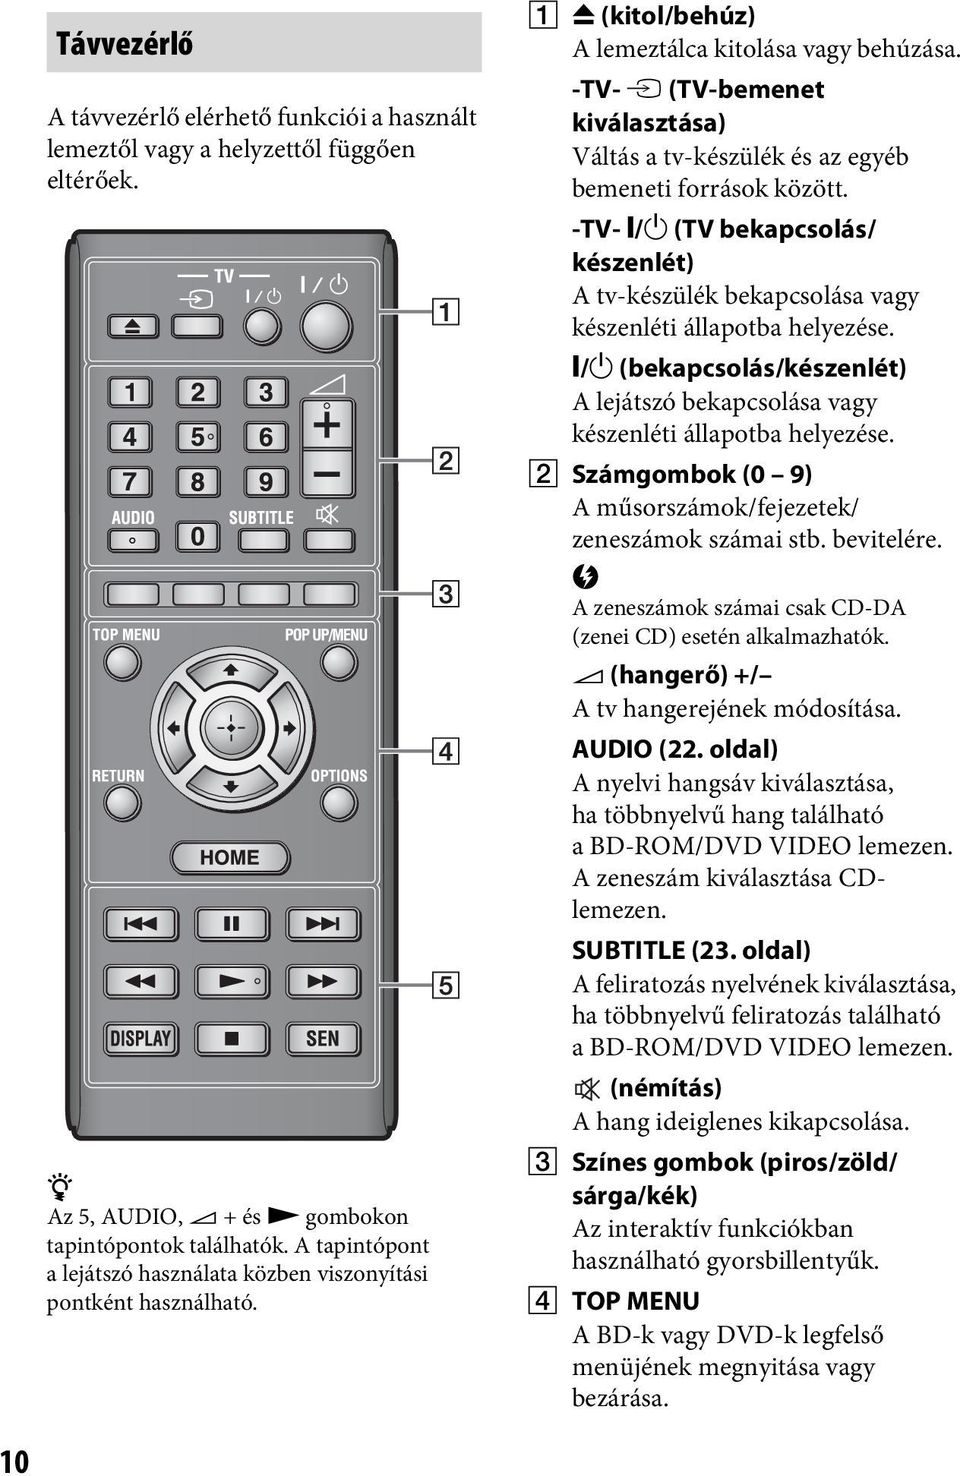 -TV- t (TV-bemenet kiválasztása) Váltás a tv-készülék és az egyéb bemeneti források között. -TV- [/1 (TV bekapcsolás/ készenlét) A tv-készülék bekapcsolása vagy készenléti állapotba helyezése.